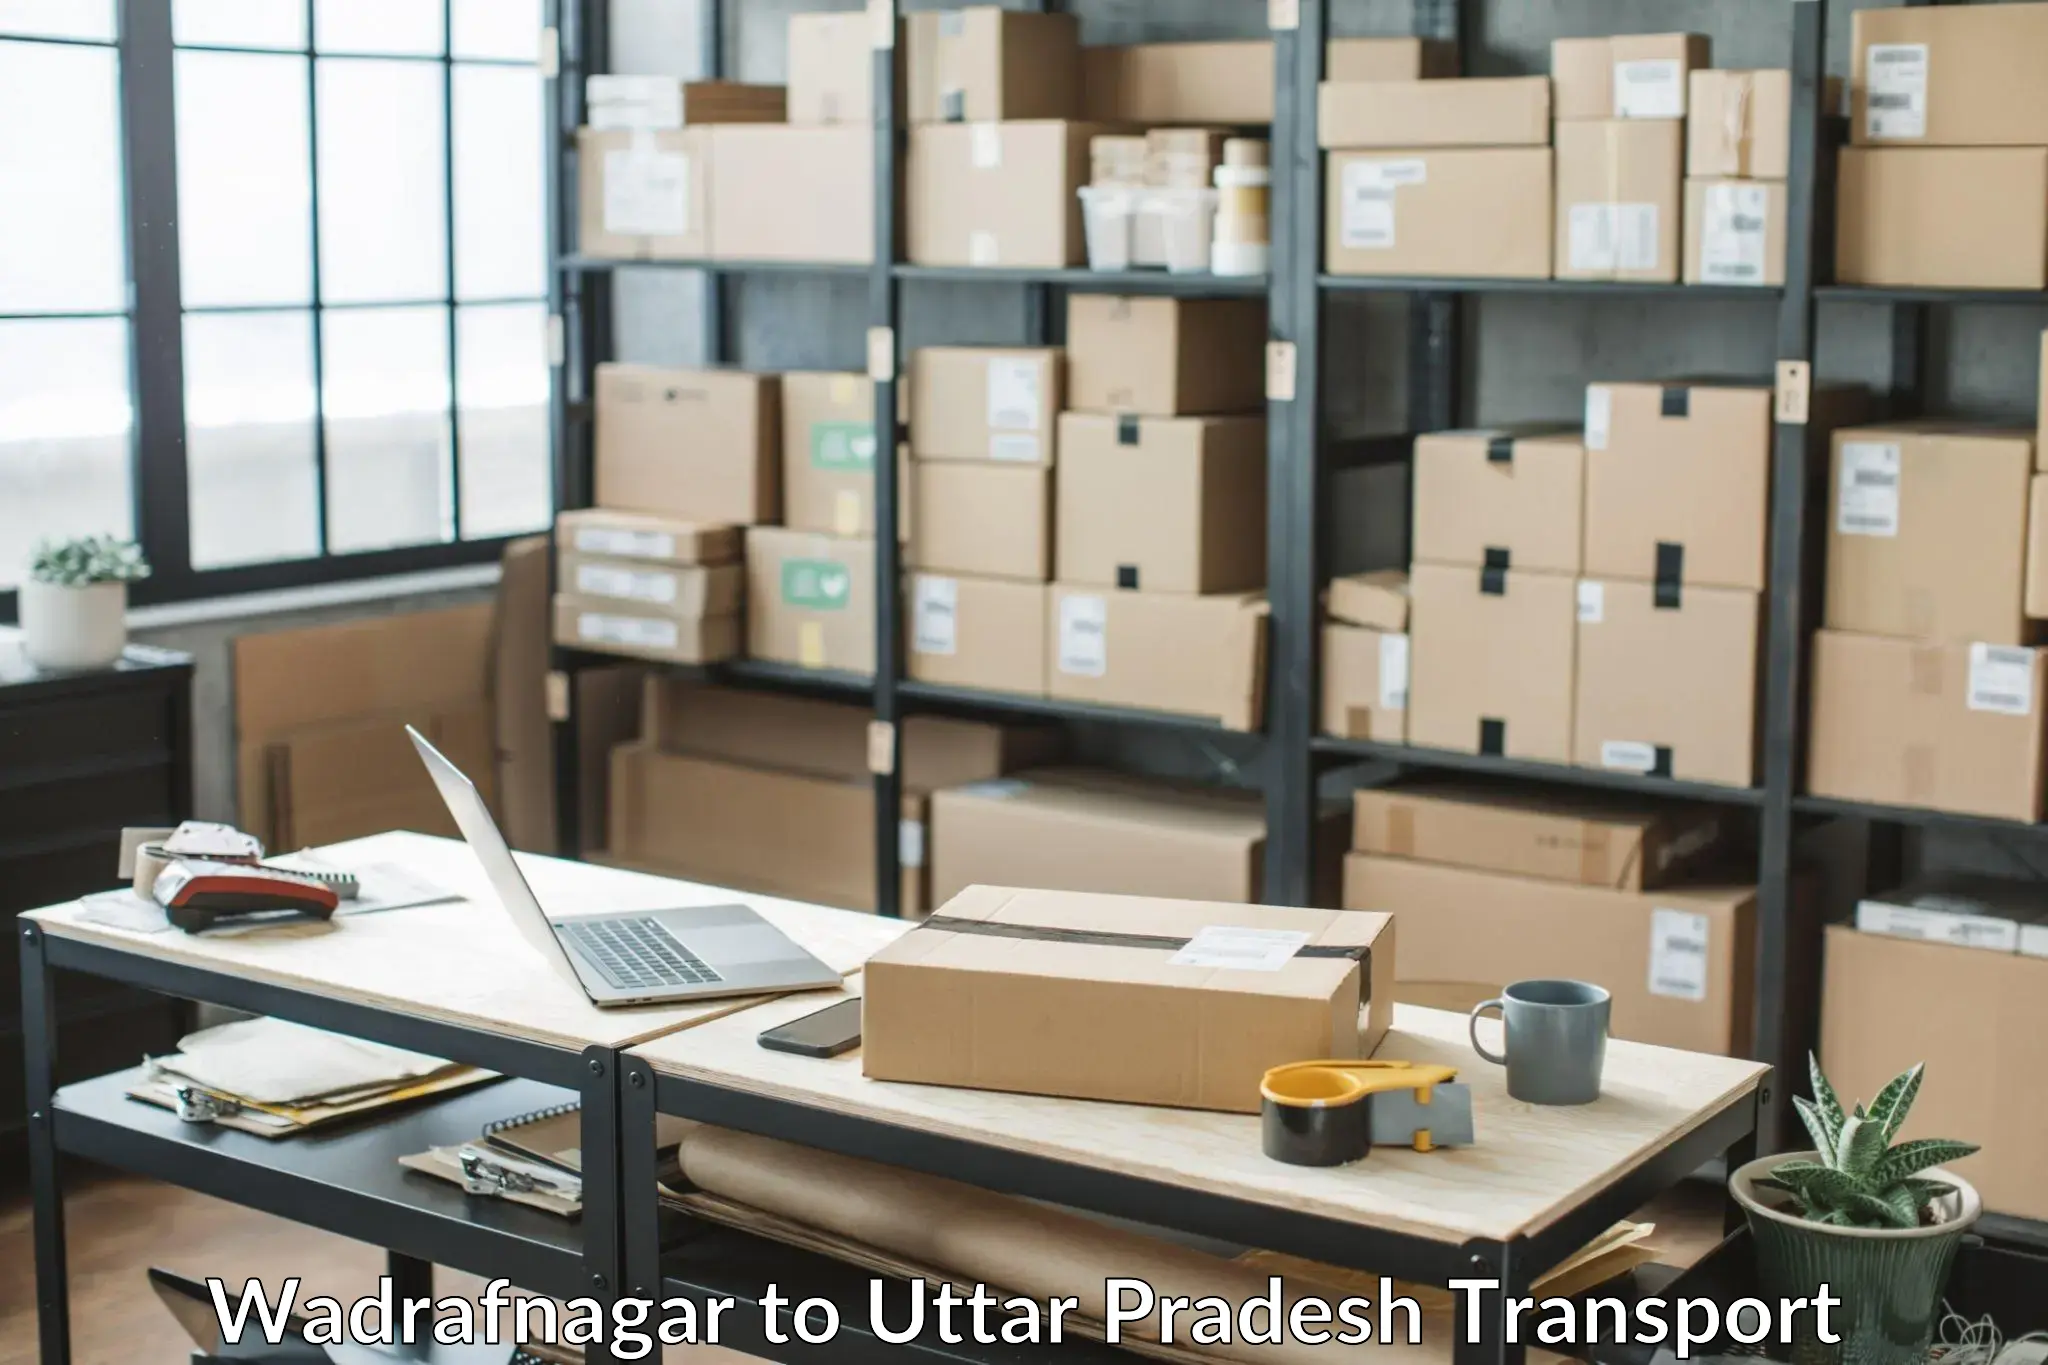 Cargo transportation services Wadrafnagar to Karchhana